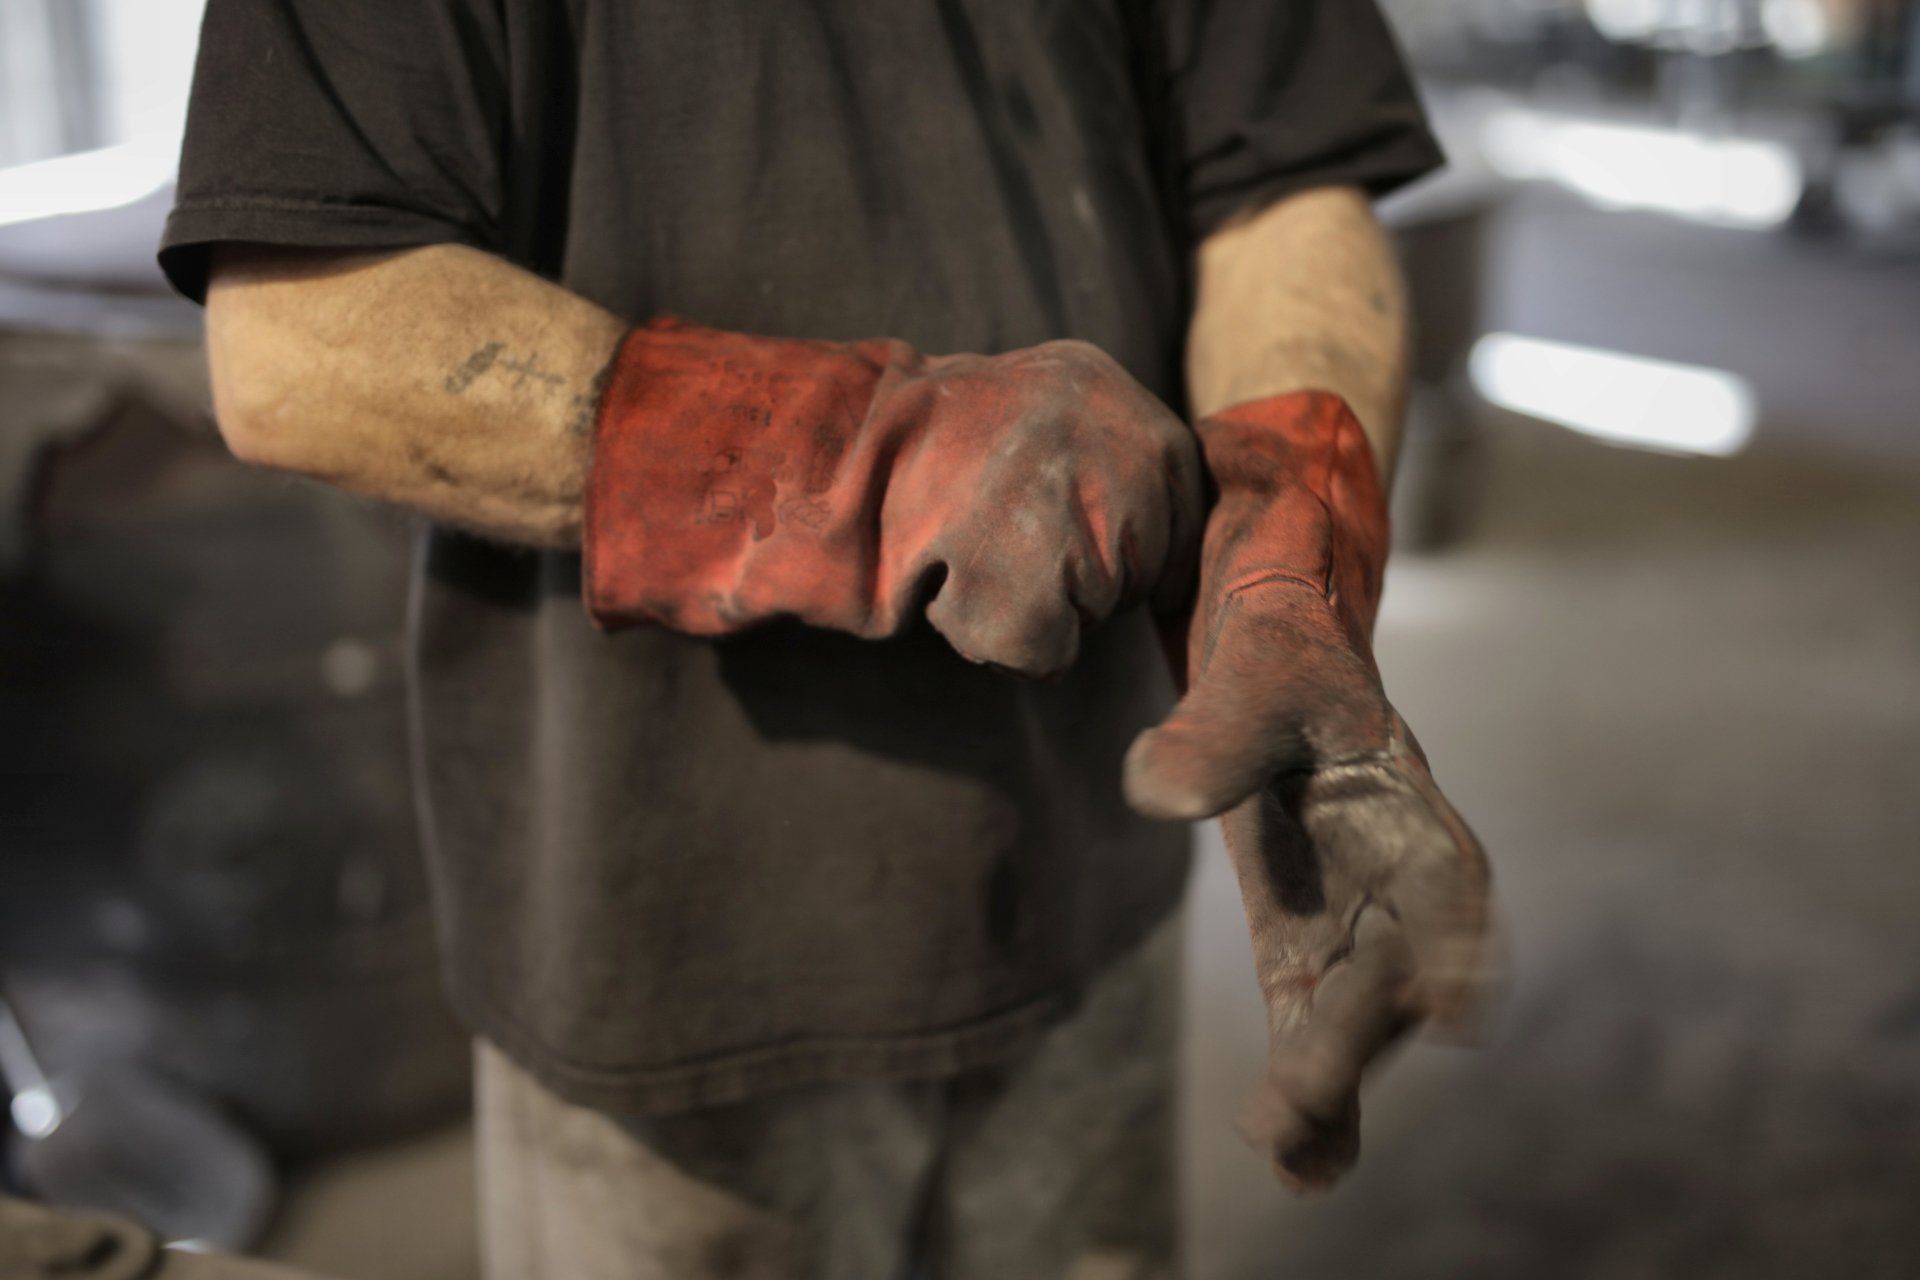 Mechanic putting gloves on - Transmission shop